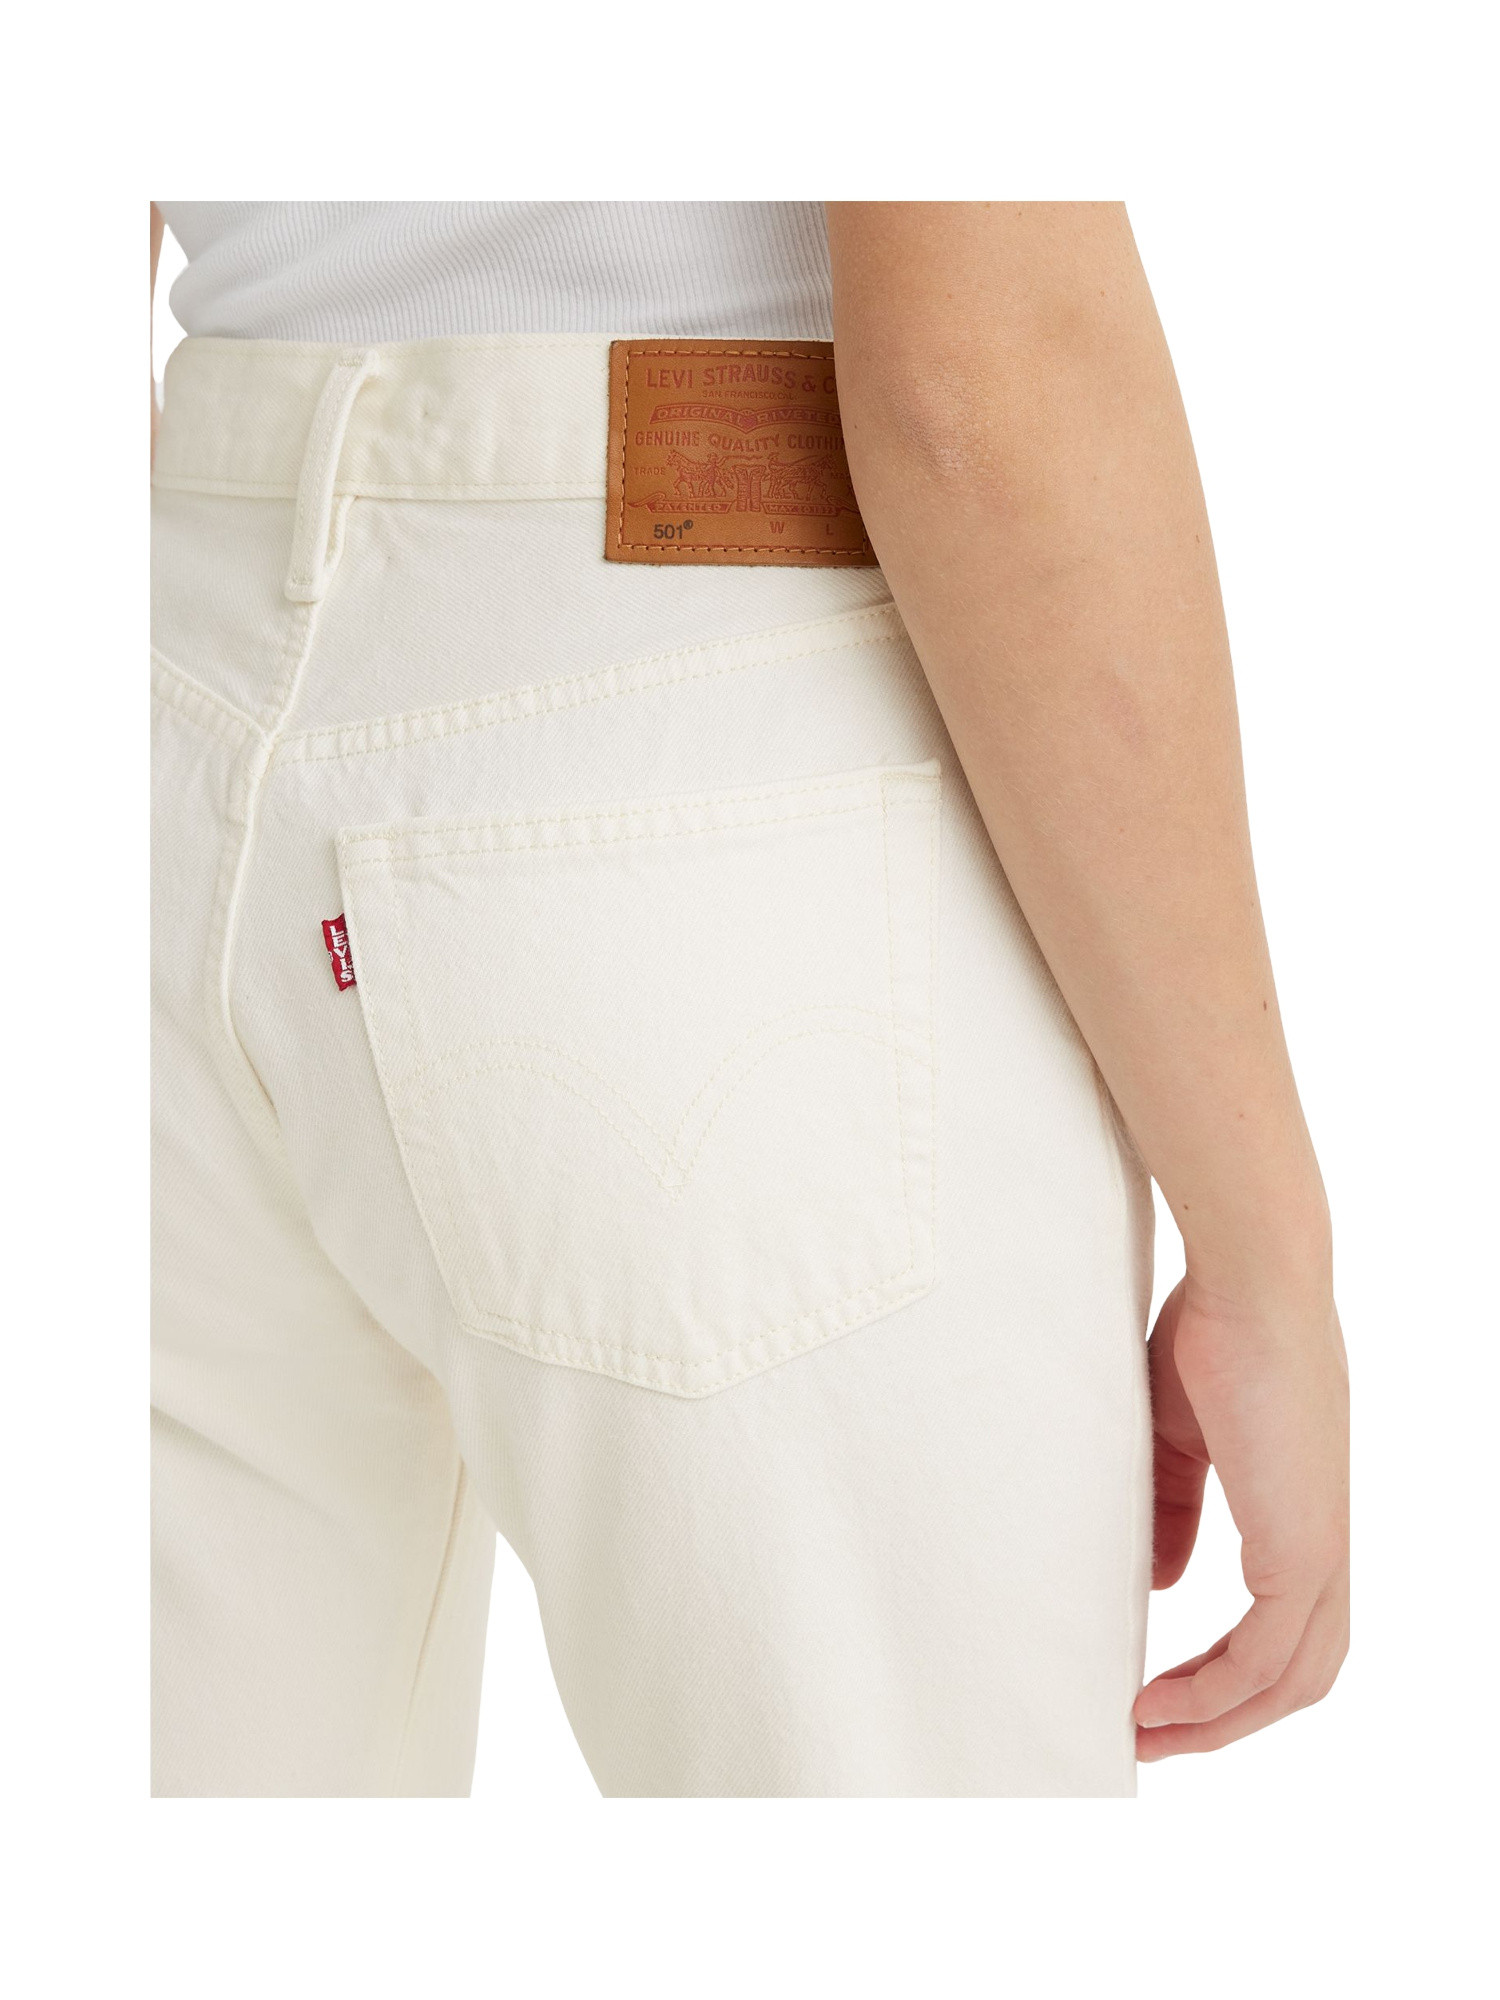 Levi's - jeans 501® original, Bianco, large image number 6